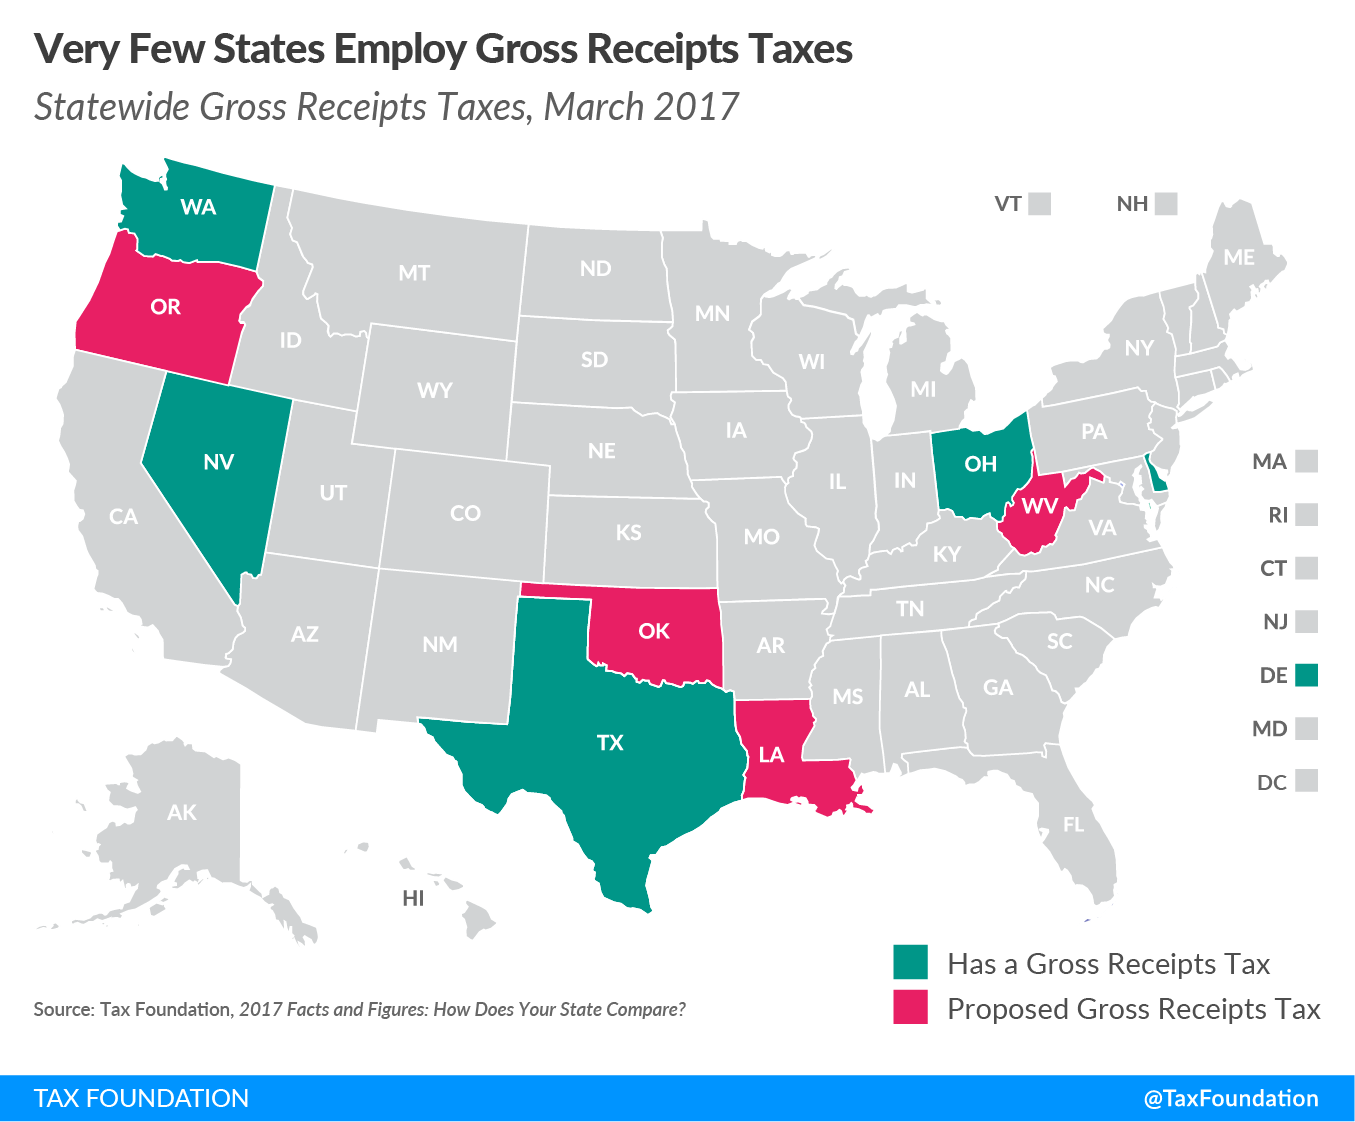 Gross Receipts Taxes 2017 (GRT)